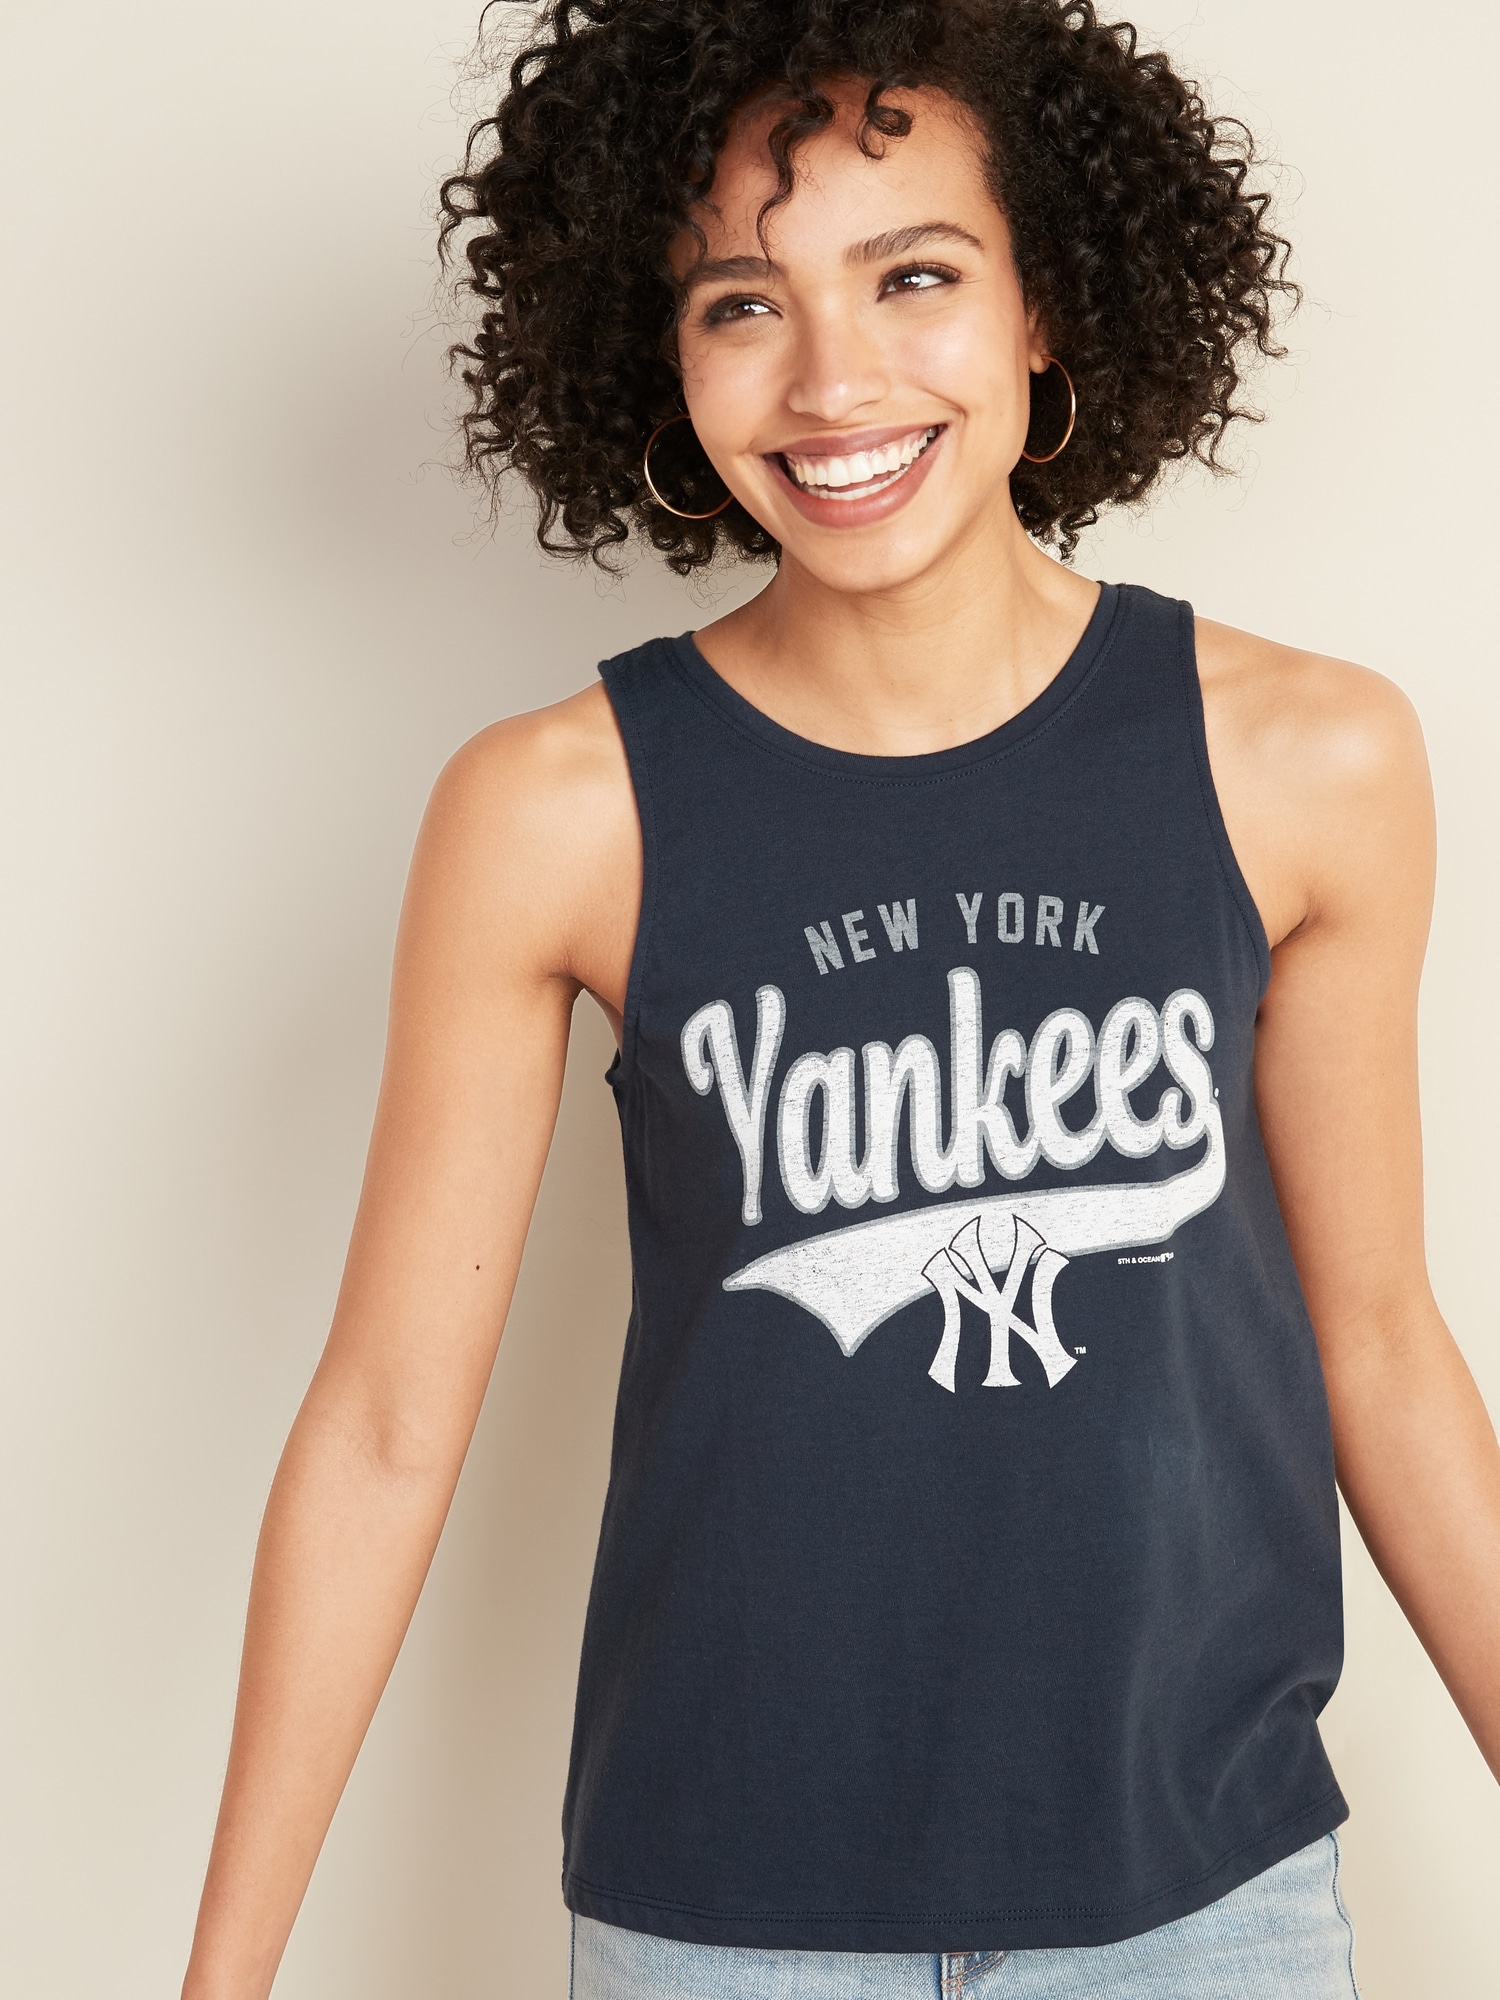 Tank Top And Leggings, New York Yankees Mlb Tank Top Leggings